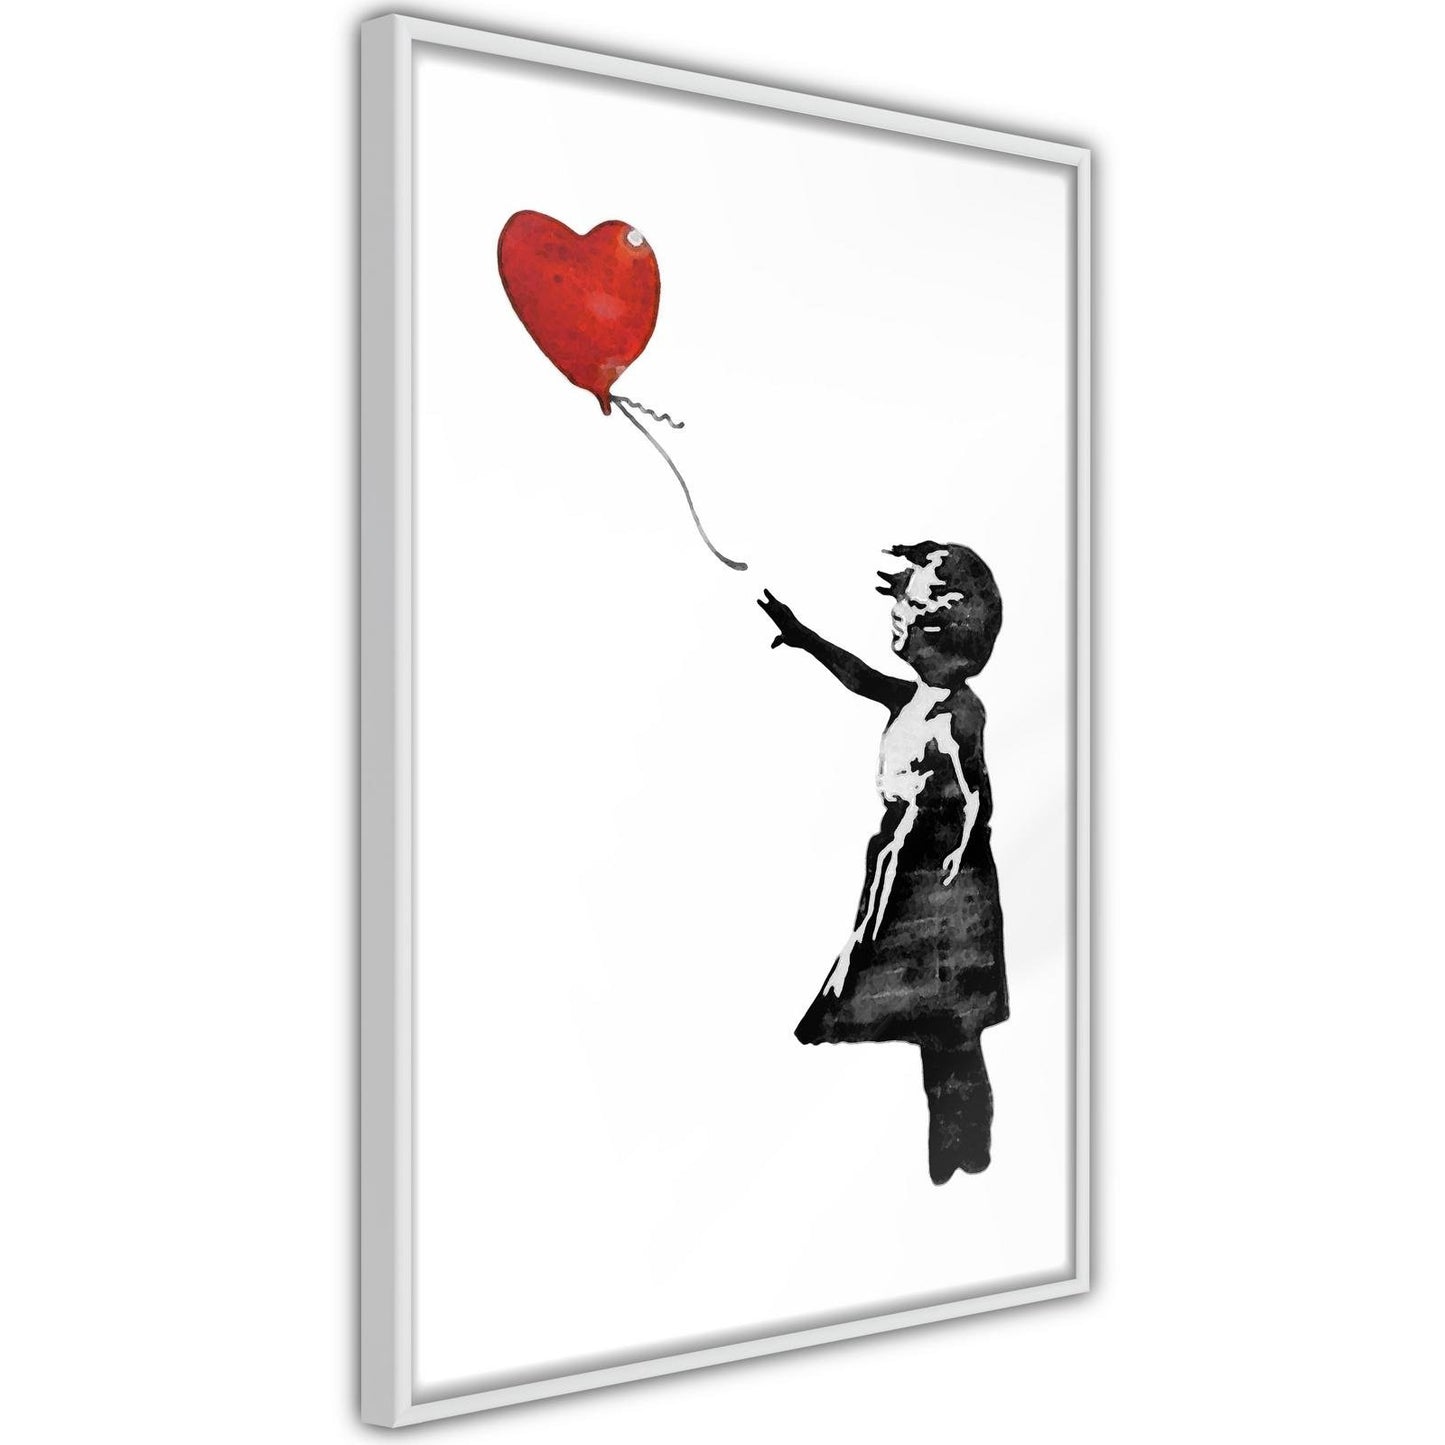 Banksy: Girl with Balloon II